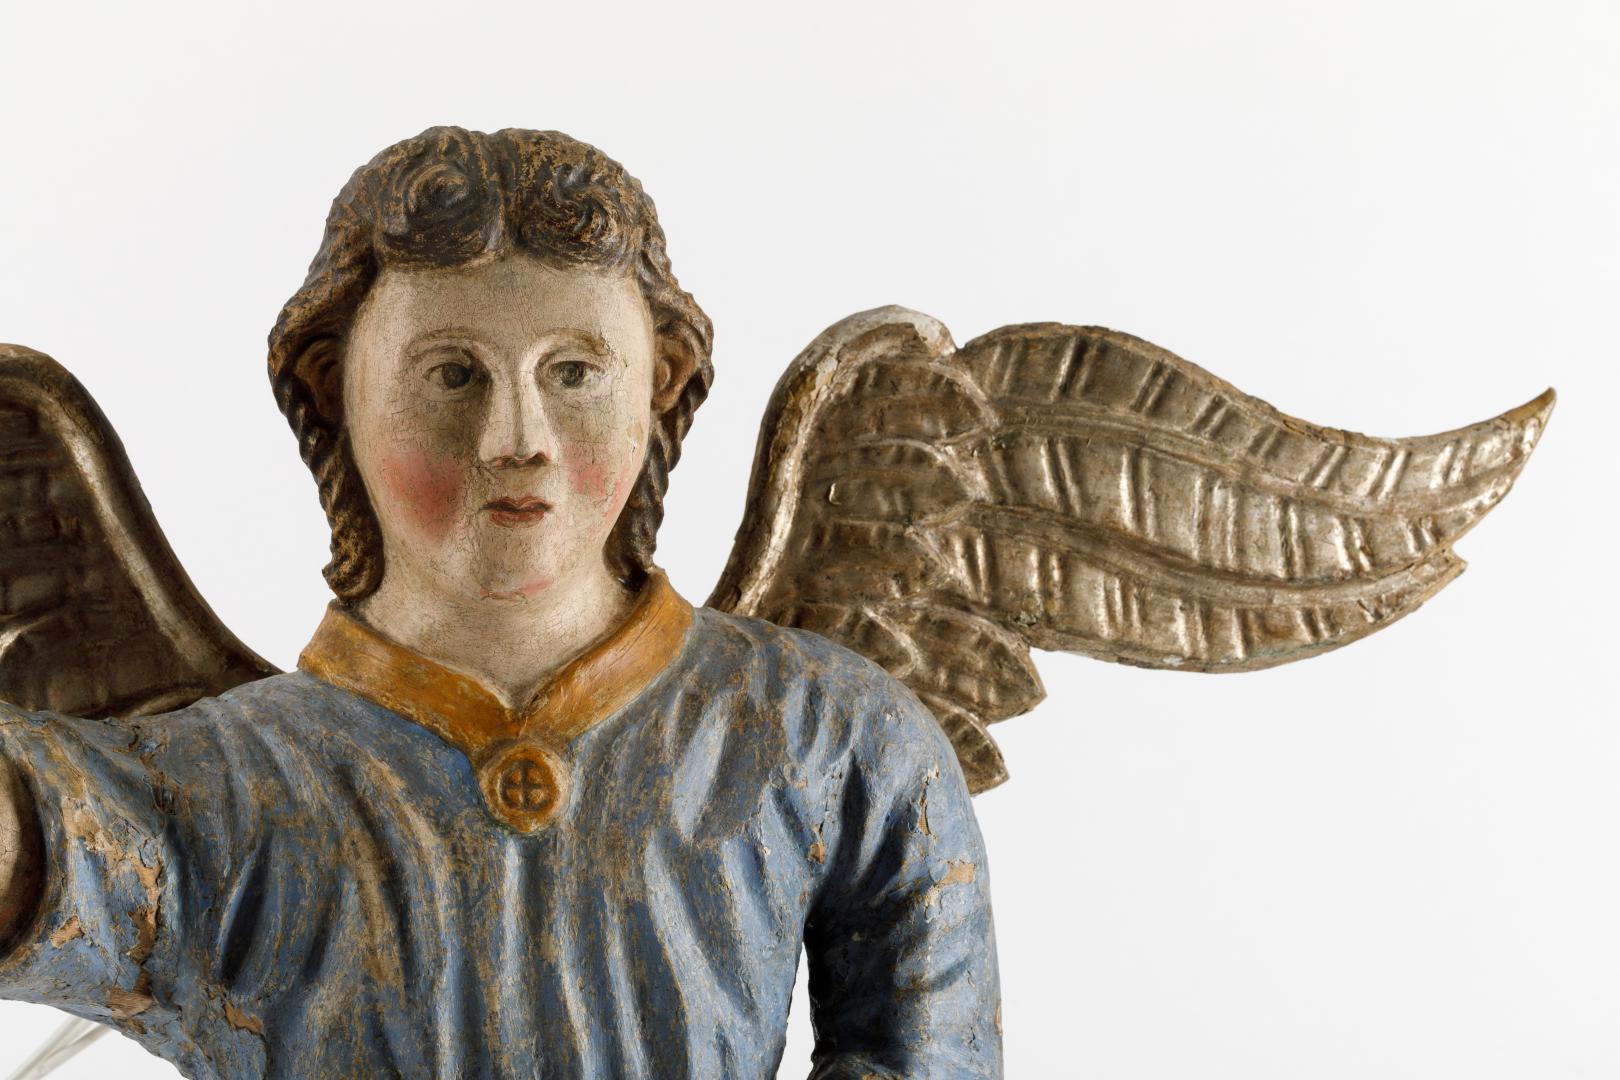 Wooden sculpture of an angel